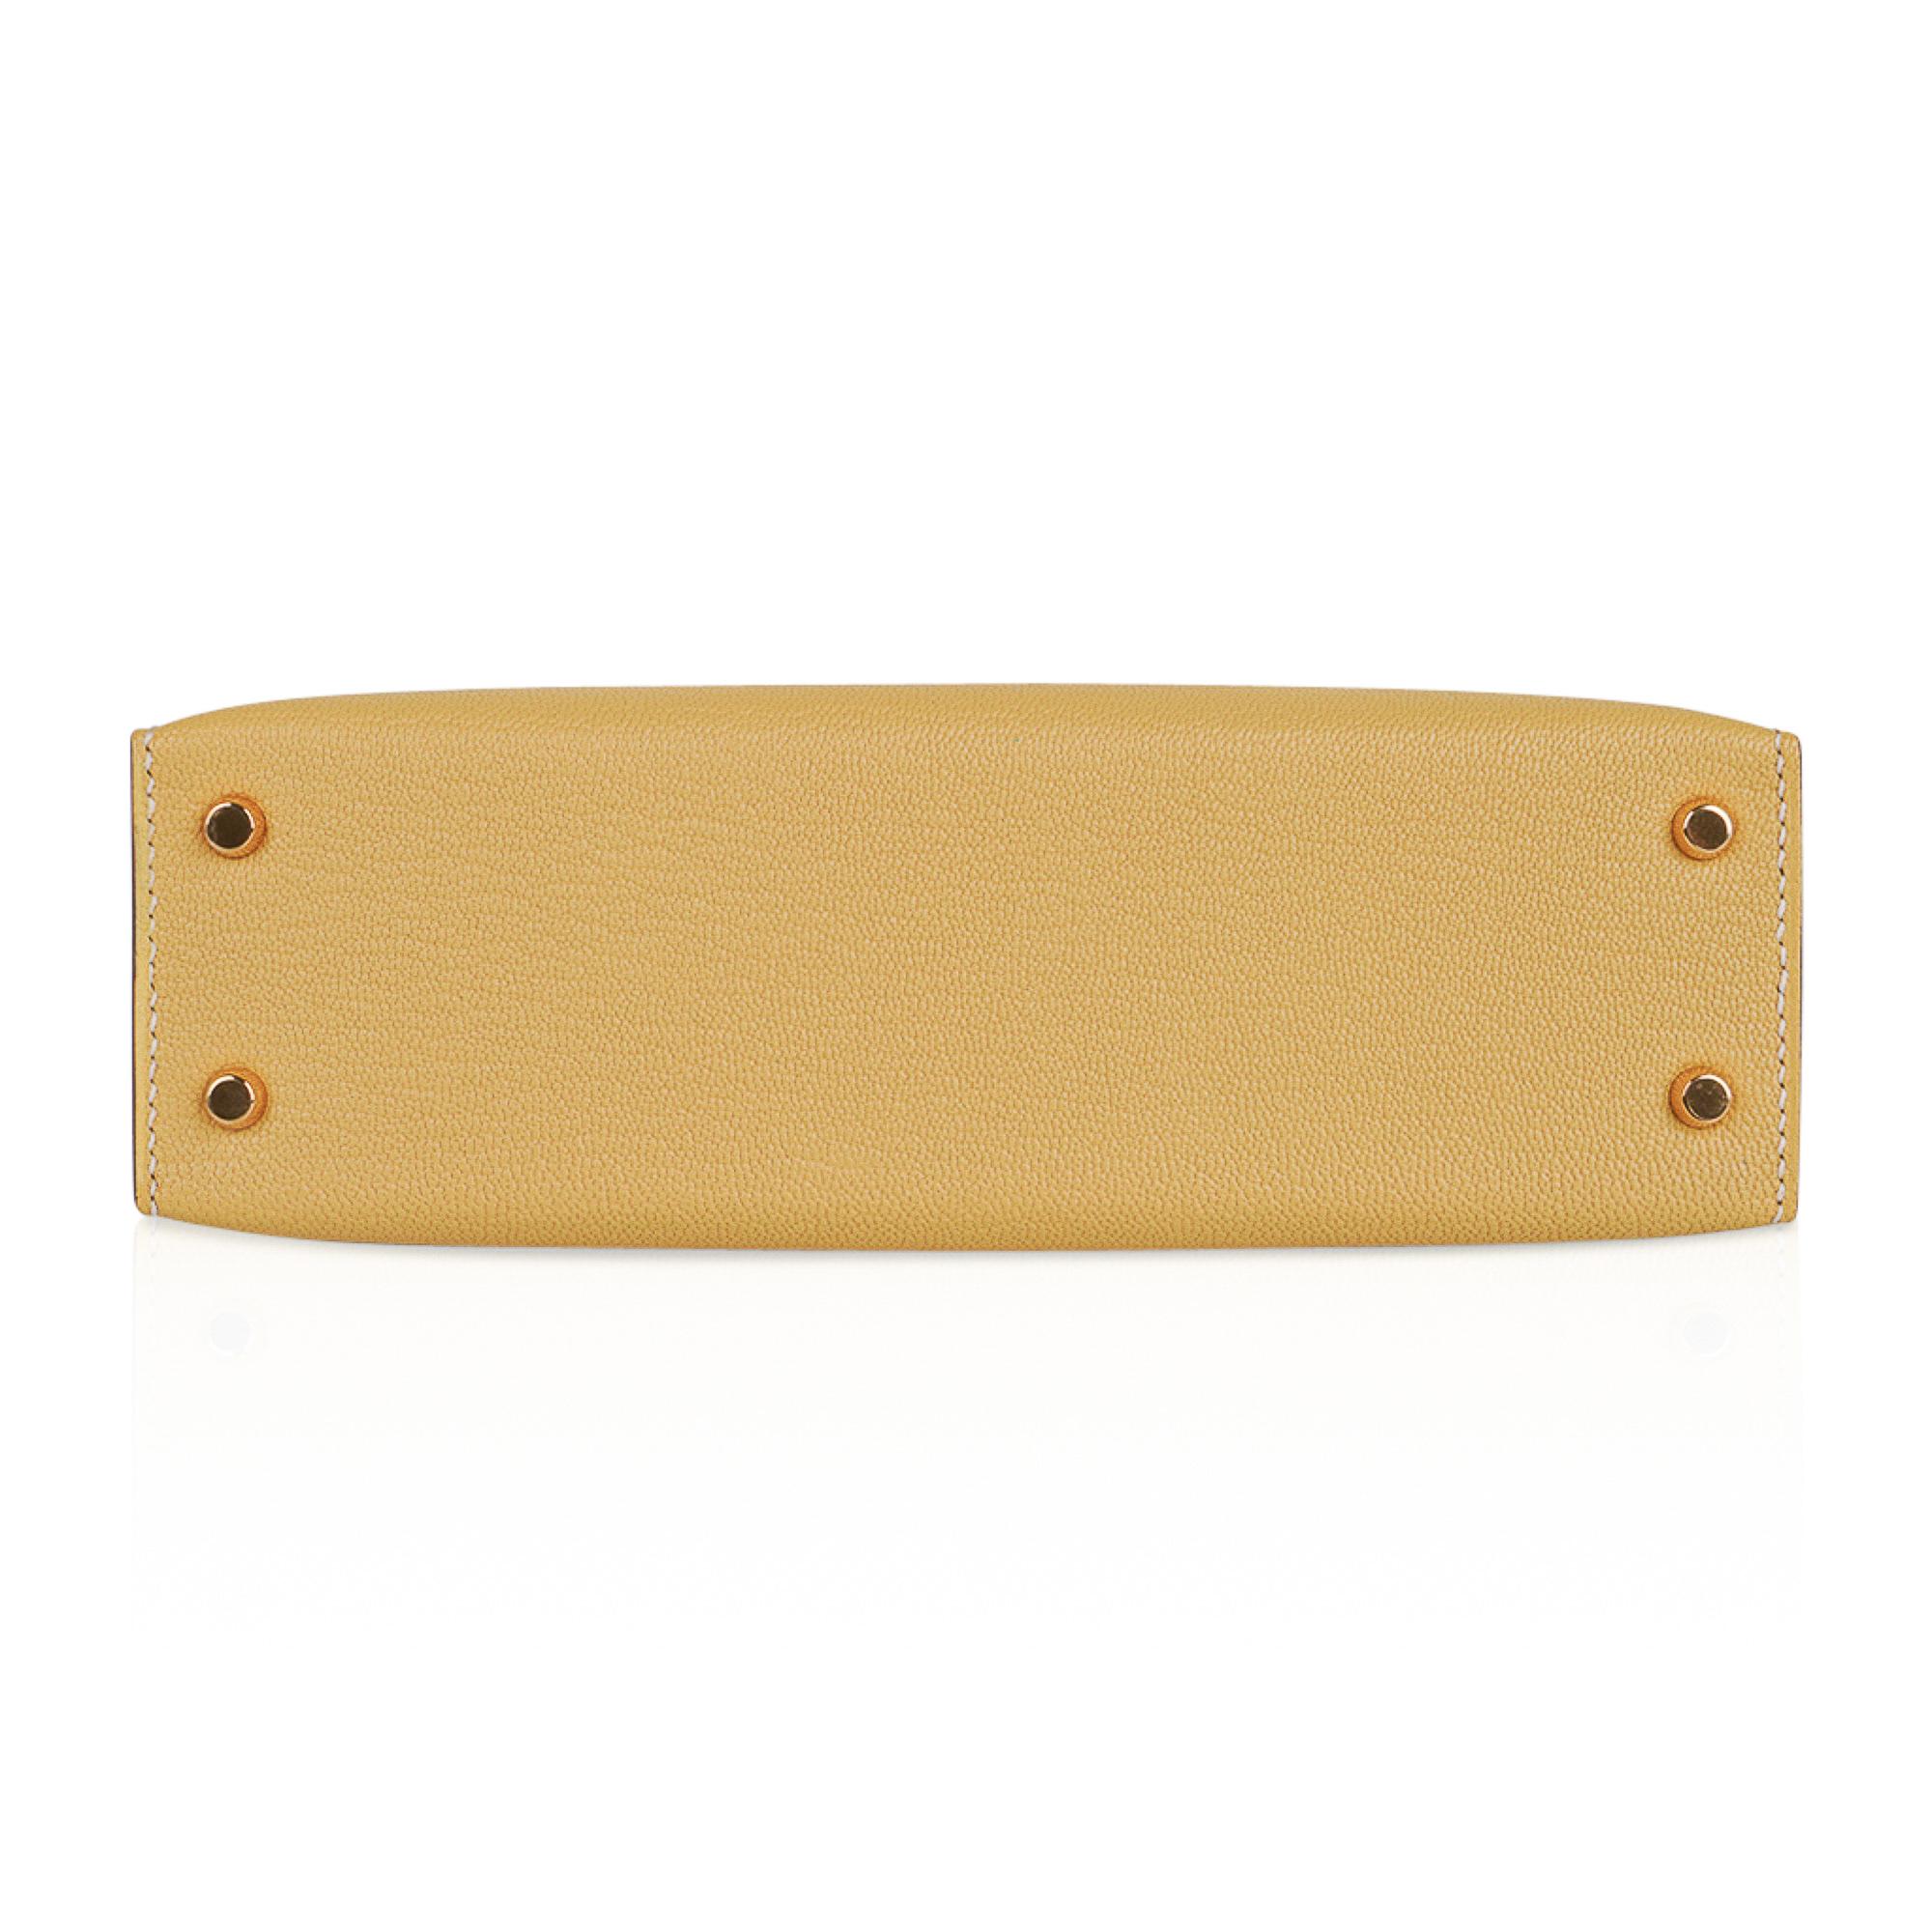 Hermes Kelly Sellier Mini 20 Jaune Foin Bag Chevre Leather Gold Hardware New 2